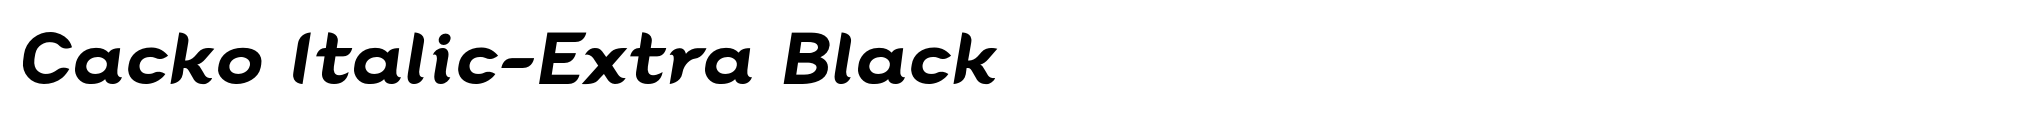 Cacko Italic-Extra Black image